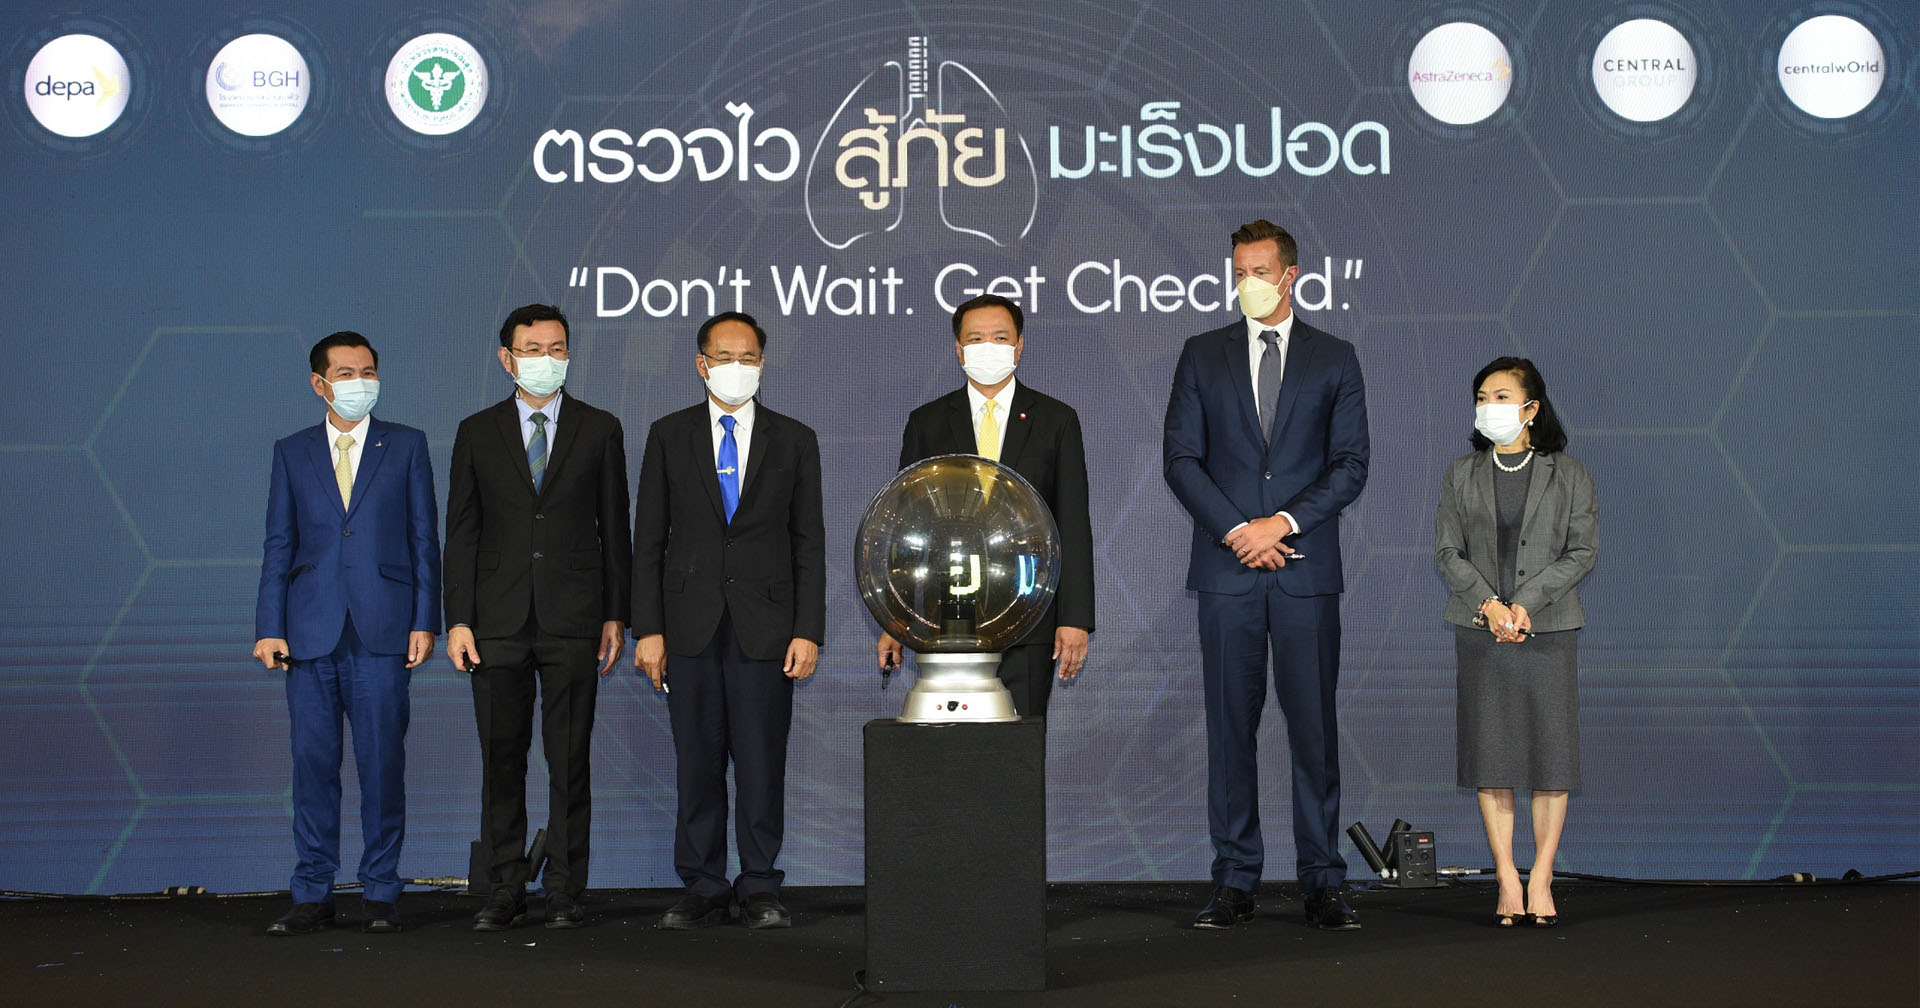 โรงพยาบาลบ้านแพ้ว ร่วมกับ ดีป้า และ แอสตร้าเซนเนก้า ประเทศไทย เปิดตัวโครงการ “ตรวจไว สู้ภัยมะเร็งปอด”